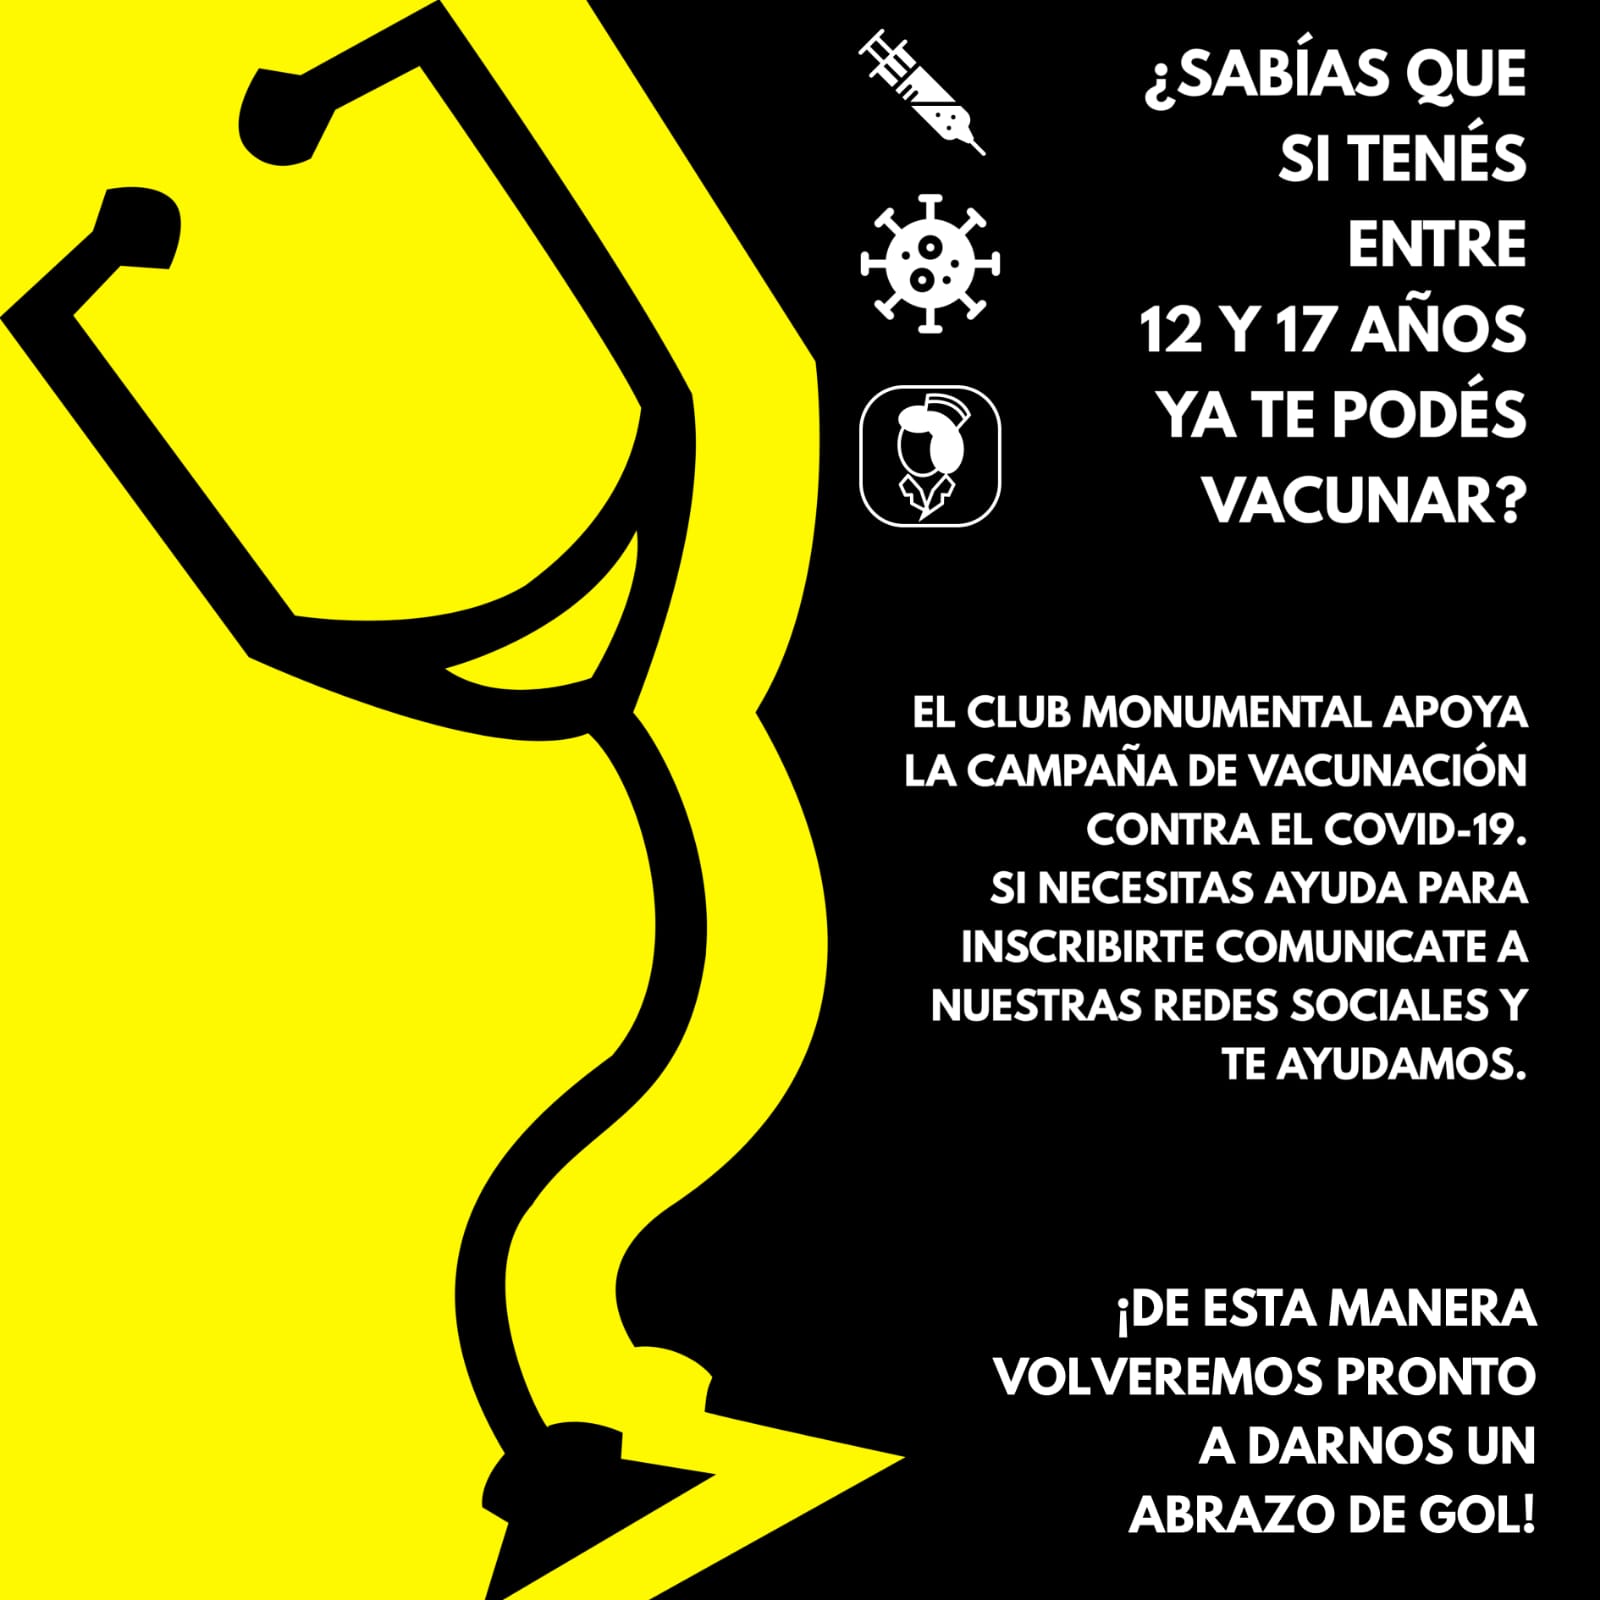 Fuerte apuesta del Club Monumental a favor de la vacunación contra el Covid